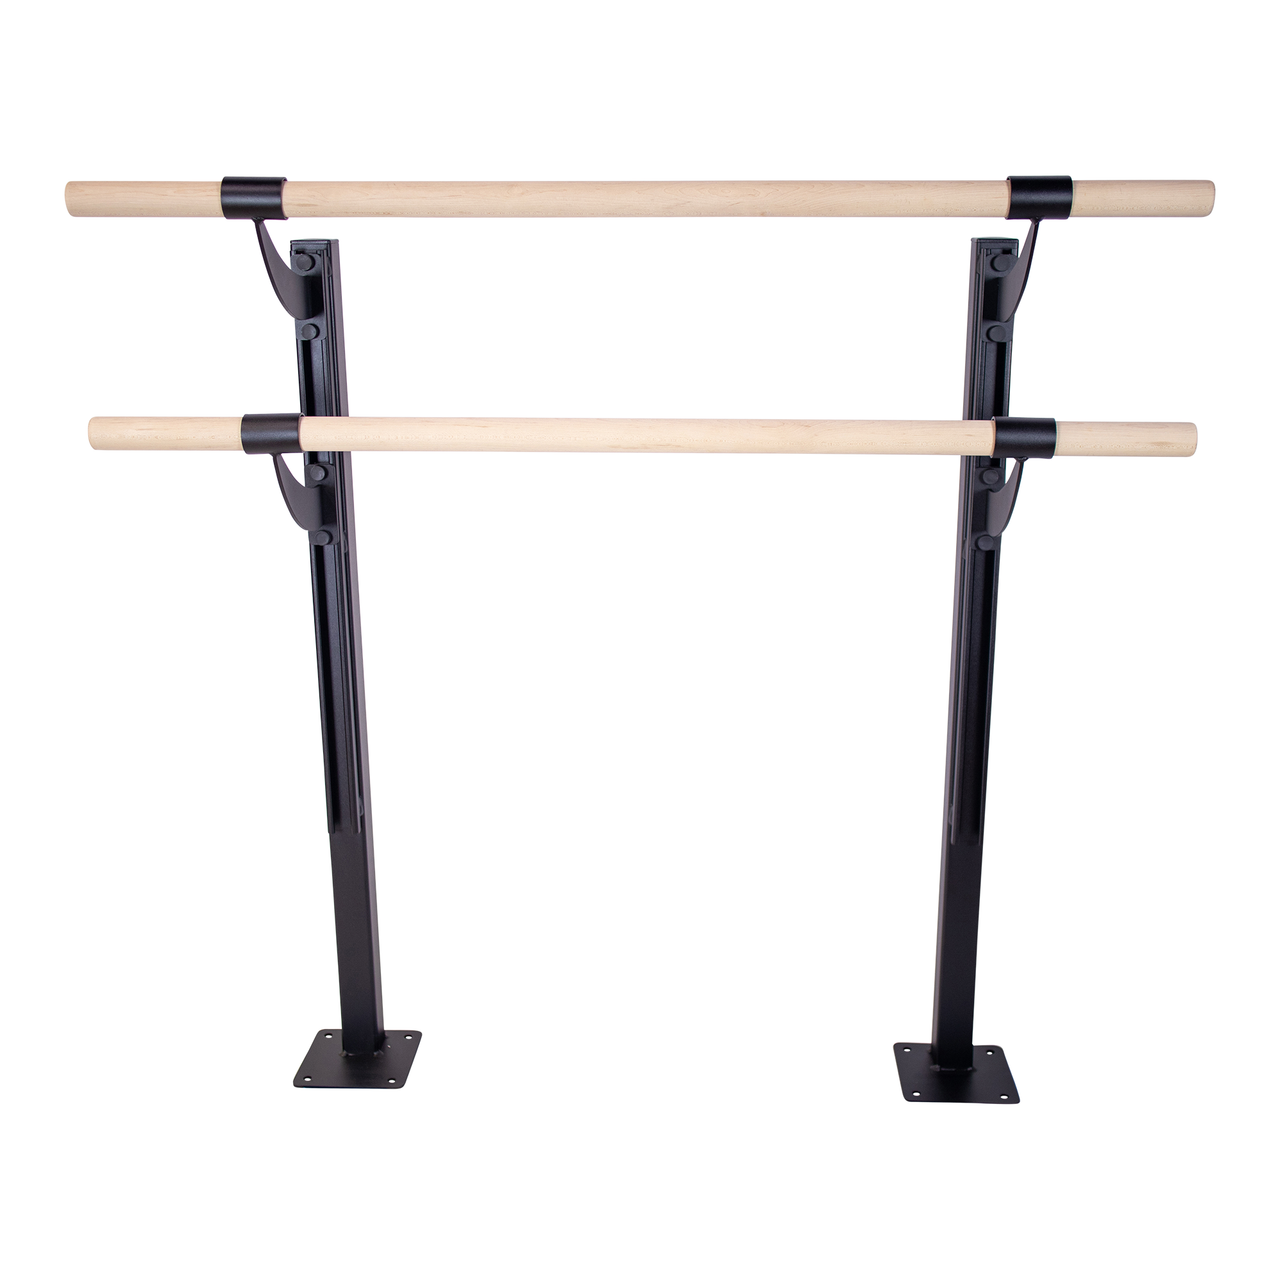 Juliet - Double Bar ADJUSTABLE Floor Mount Ballet Barre System (wood) For  Ballet/Dance Only